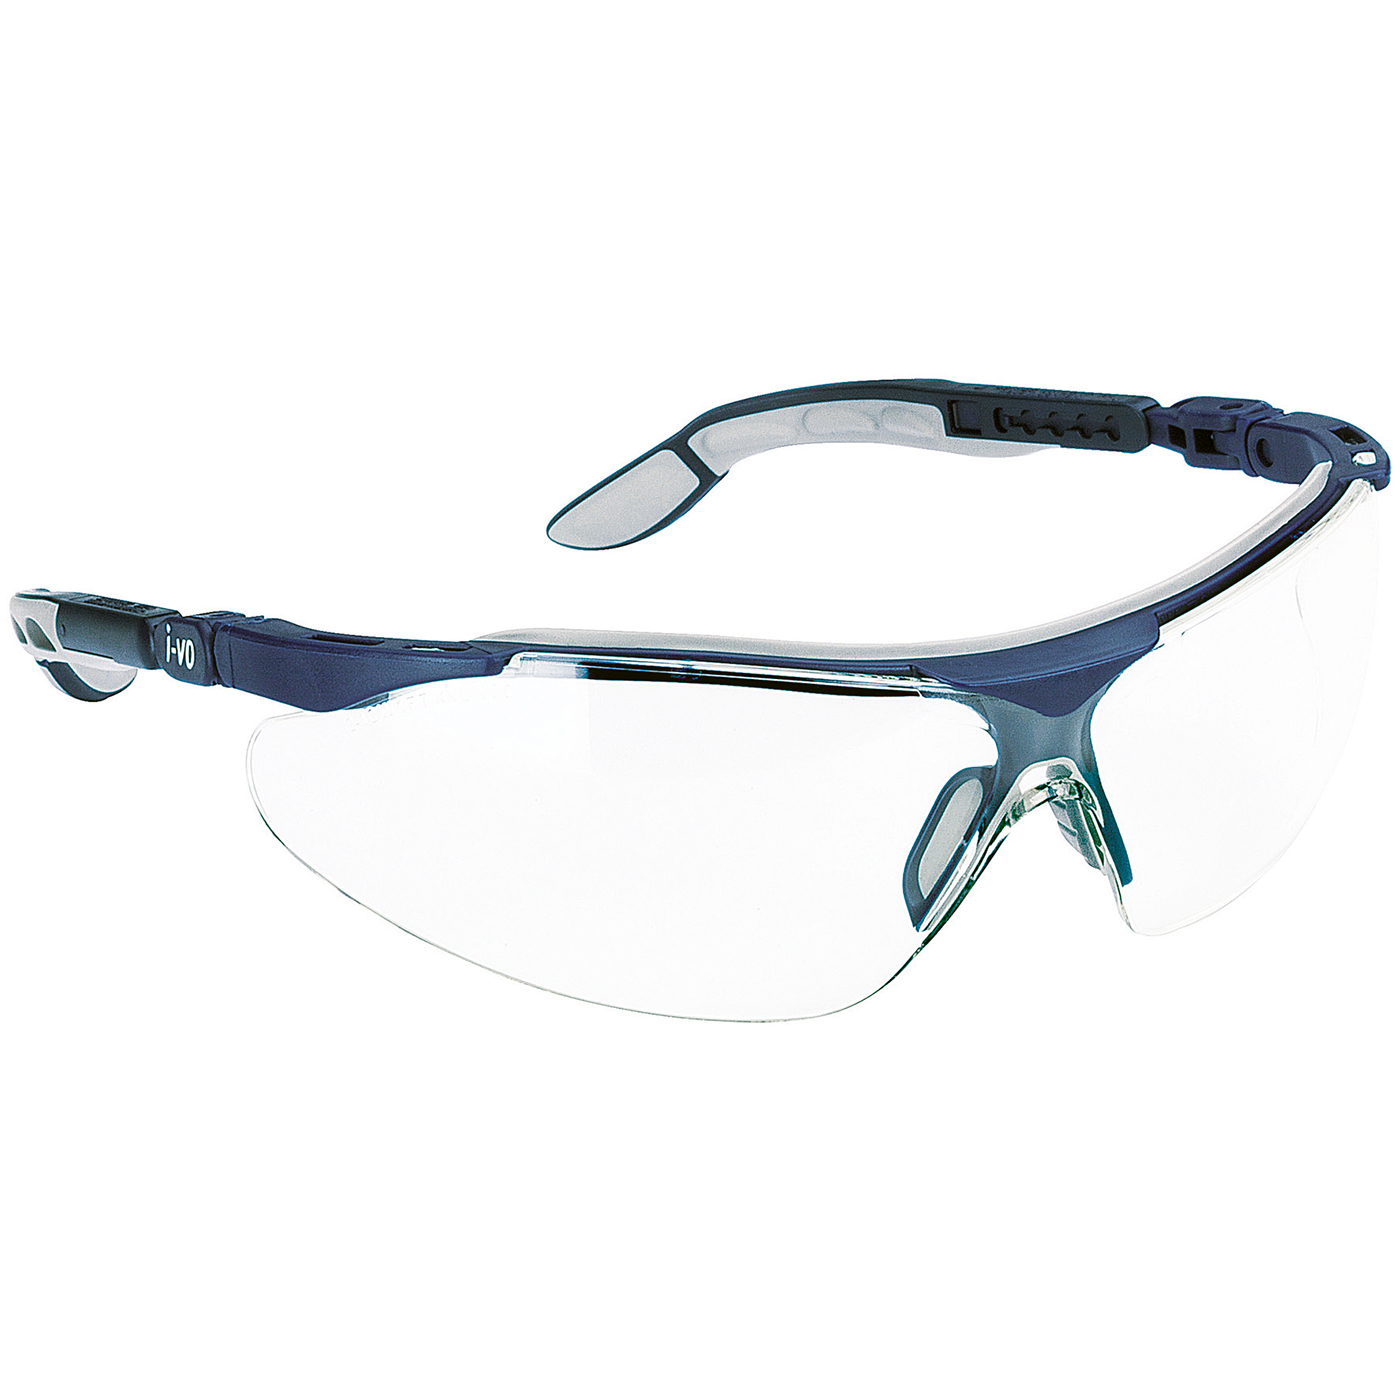 uvex iSpec Comfort Fit Schutzbrille,Scheibe farblos,F. blau/grau - 1 Stück